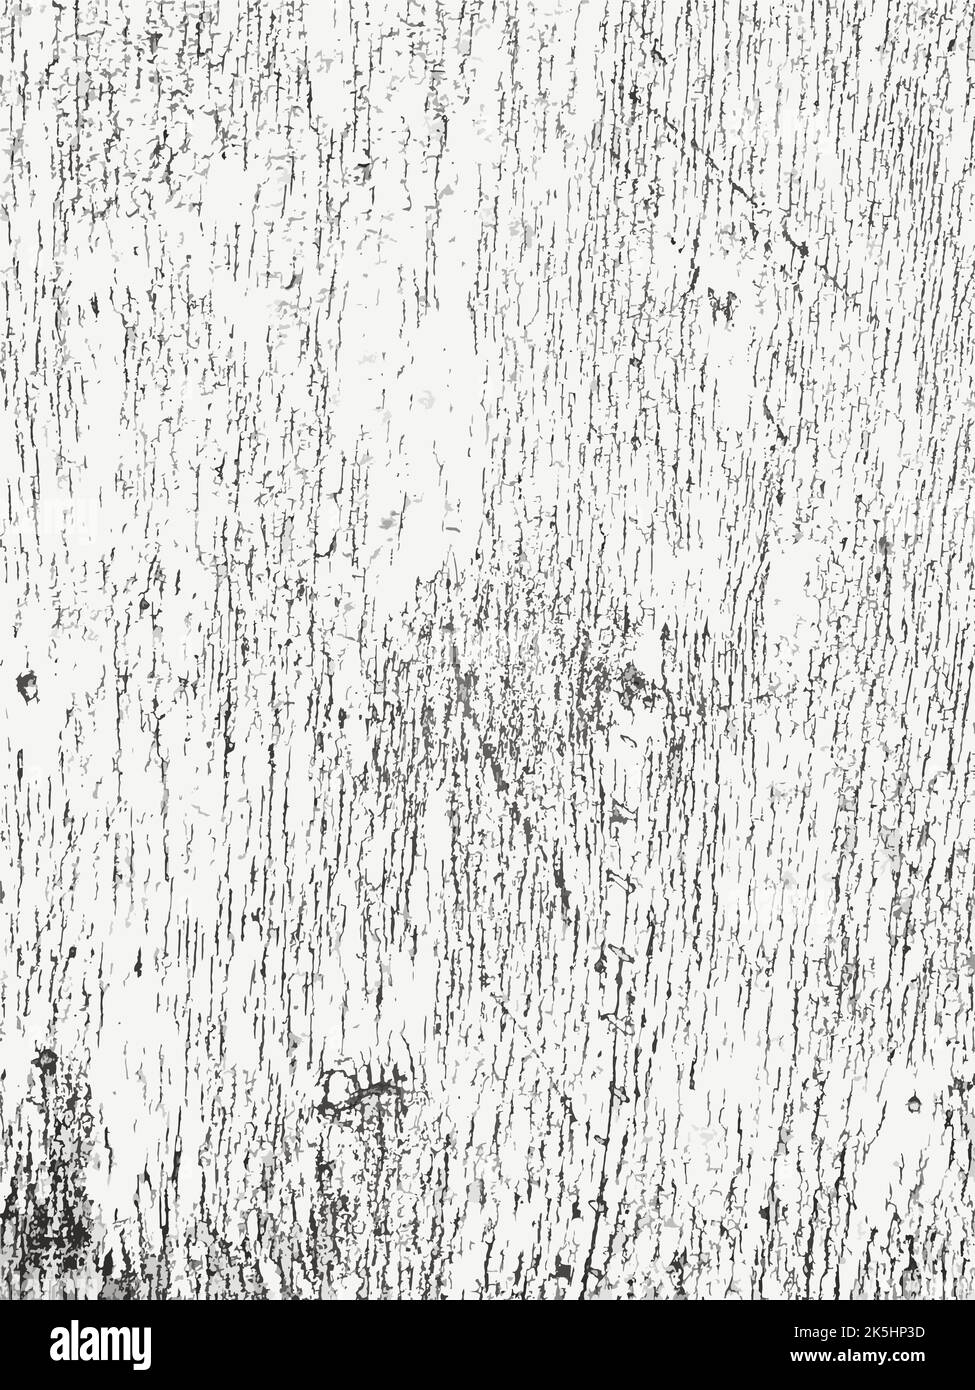 Graue Grunge Holzstruktur. Rauer Overlay-Hintergrund aus altem verwittertem Holz. Zerkratzte, vernarbte Kulisse mit Distress-Effekt für etwas Design. Vec Stock Vektor